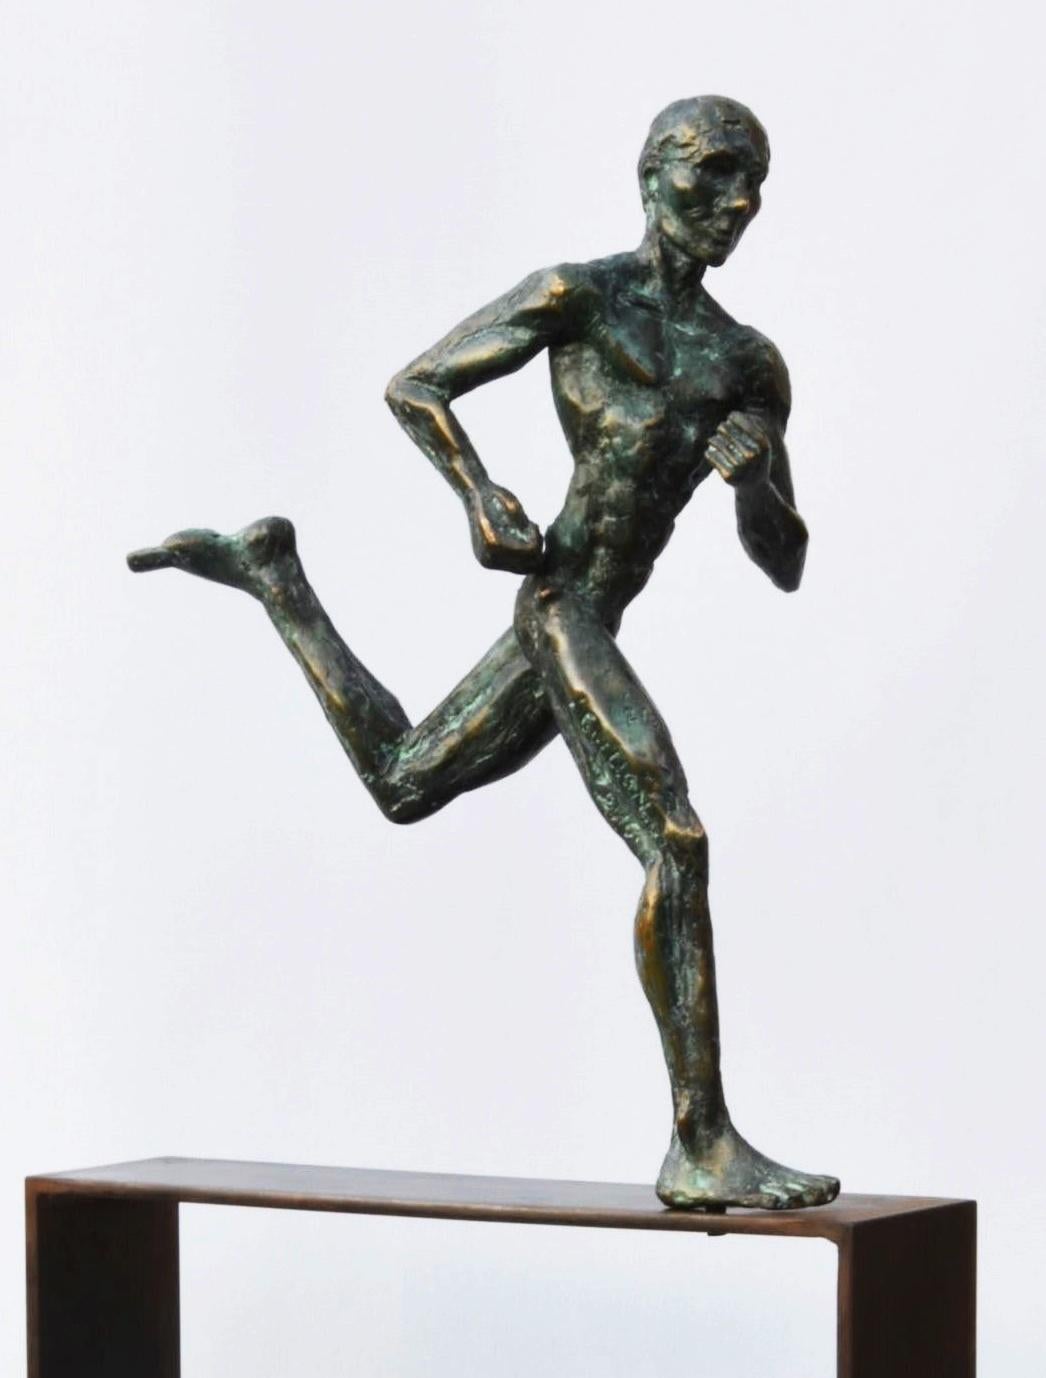 Marathon Runner, Bronzeskulptur des französischen zeitgenössischen Künstlers Yann Guillon.
Limitierte Auflage von 8 + 4 Probedrucken, signiert und nummeriert. Sockel aus Metall.
Yann Guillon konzentriert sich in seinem Werk auf den menschlichen